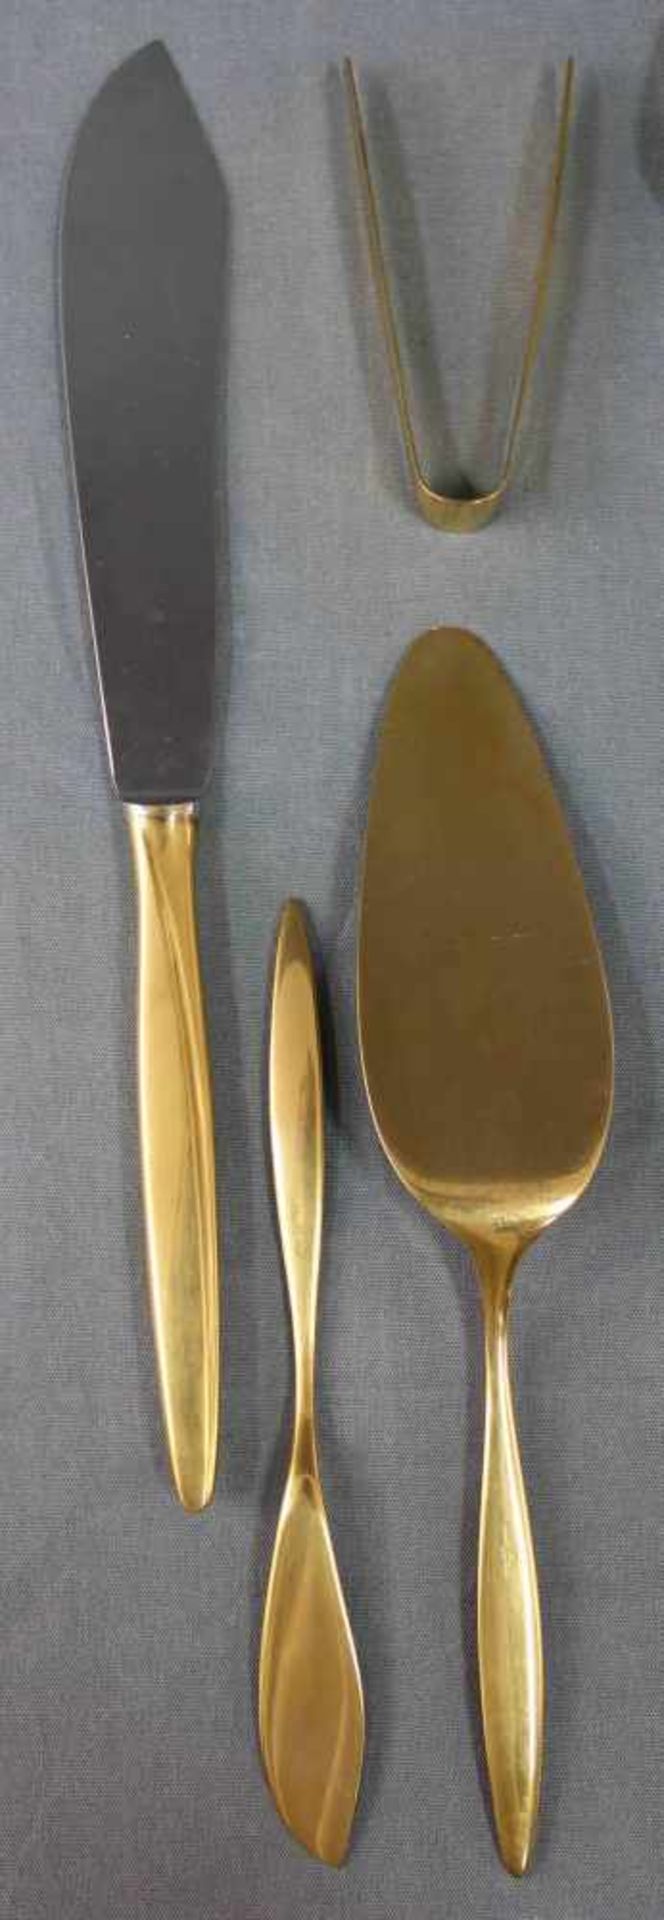 WMF Besteck Silber 800, vergoldet.1311 Gramm (gewogen ohne Messer).WMF Cutlery Silver 800, gilded. - Image 6 of 13